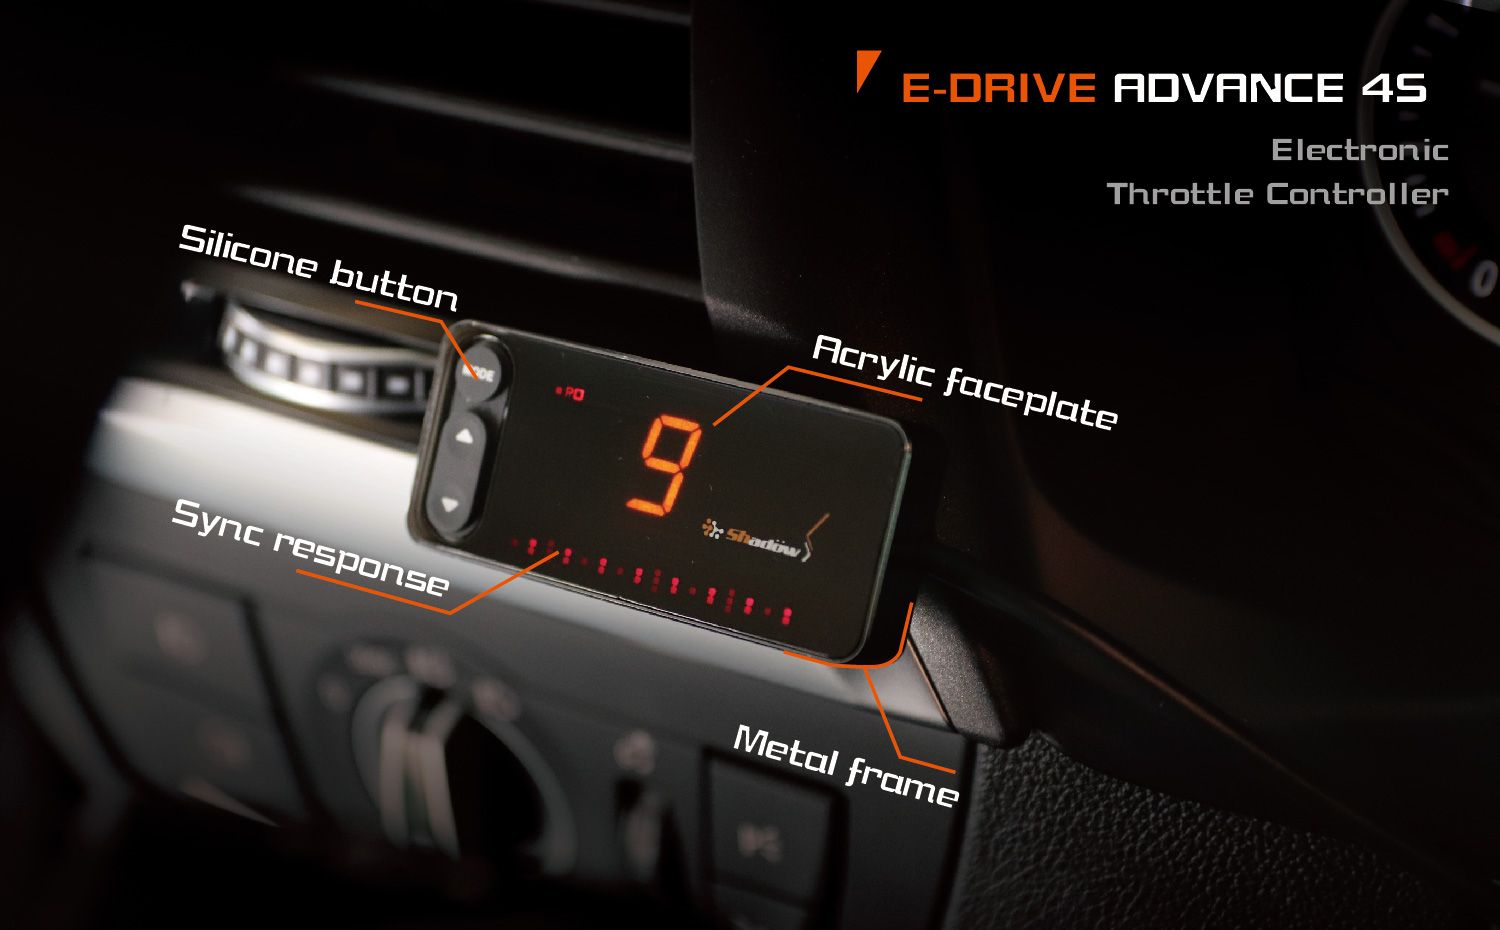 E-DRIVE ADVANCE 4Sには金属フレームがあります